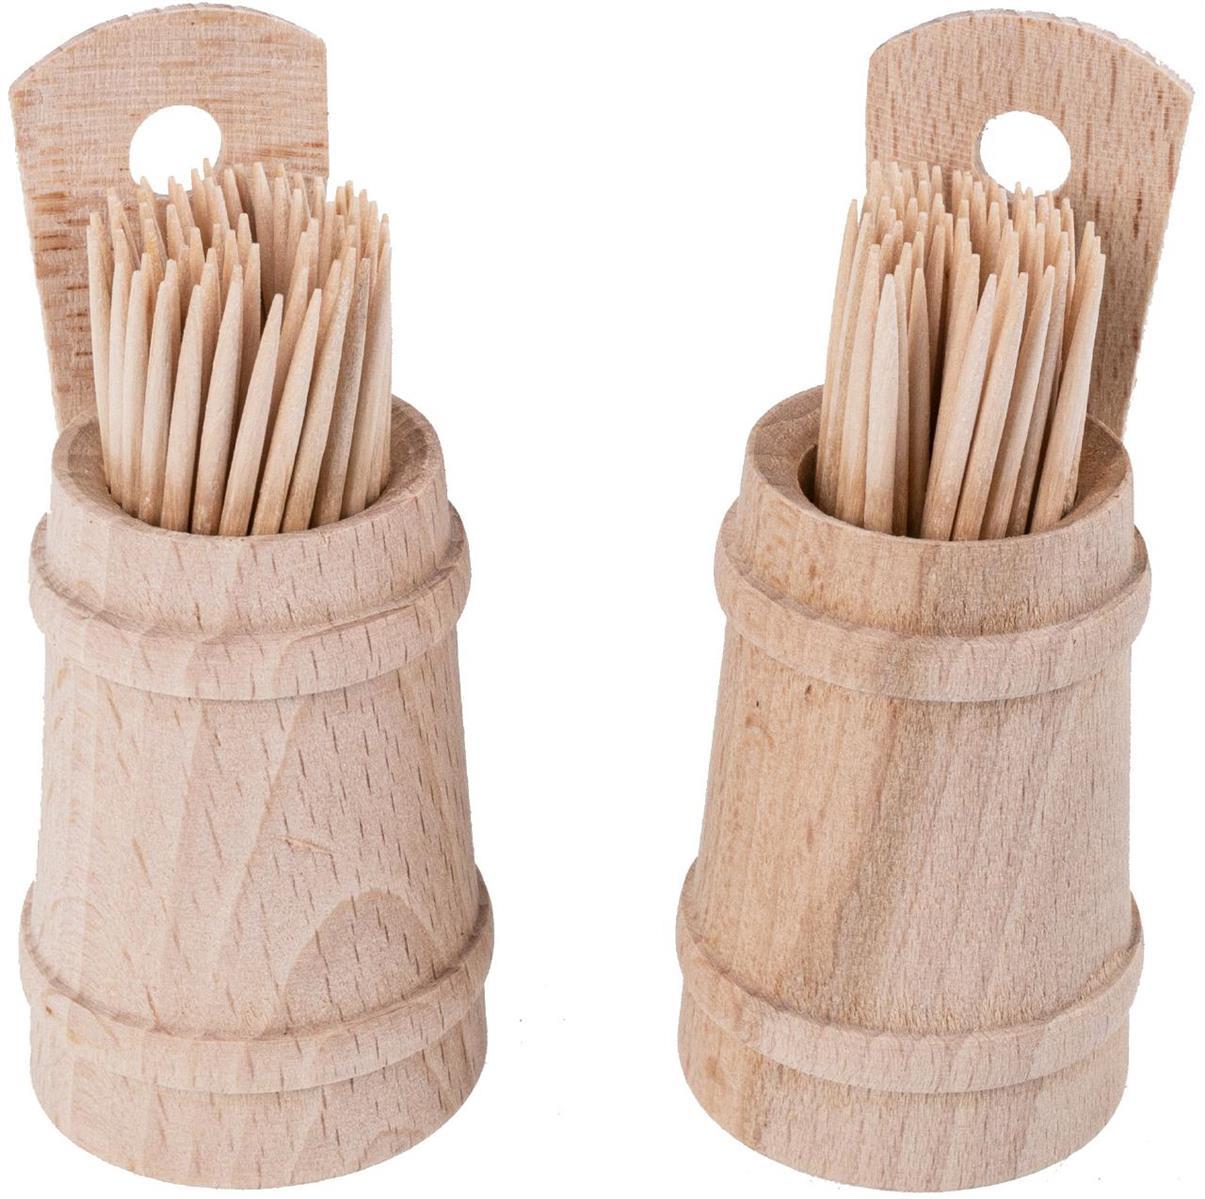 Hochwertiges Zahnstocher Faesschen aus Buchenholz inklusive Zahnstocher praktische GroeÃŸe